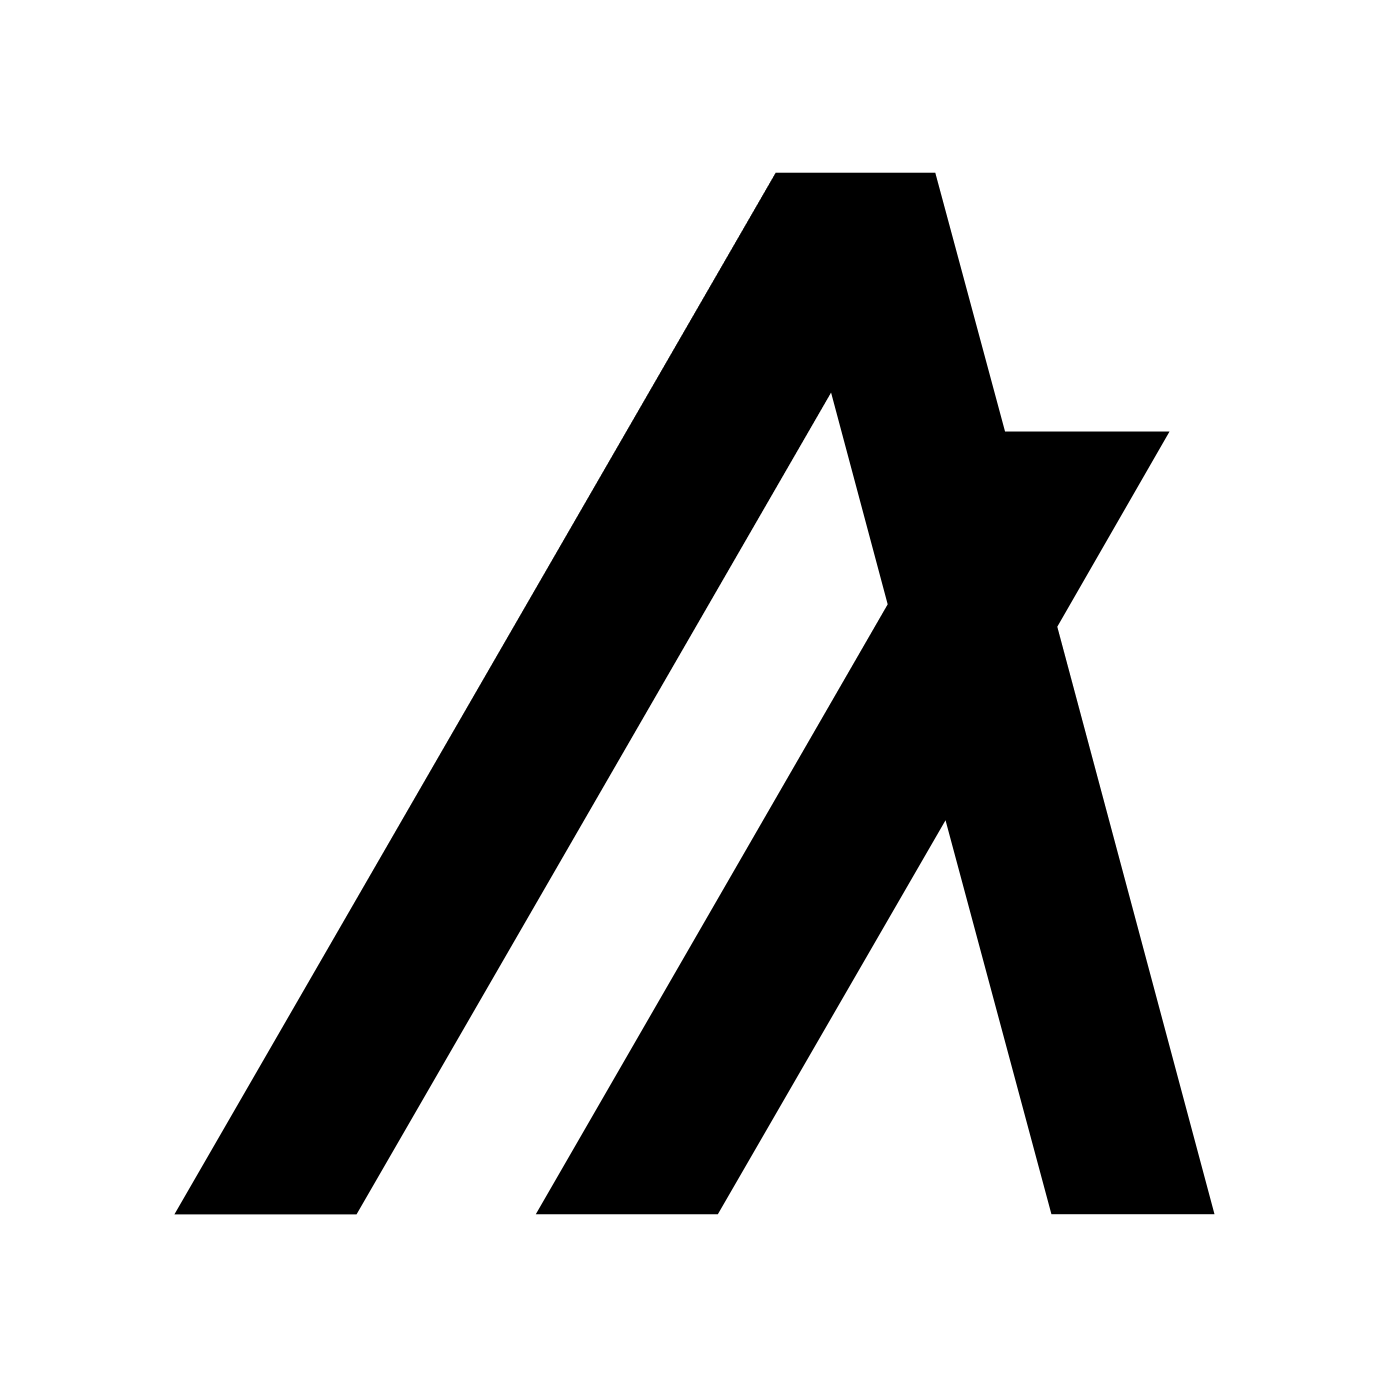 Shows a black Algorand logo light mode and white in dark mode.